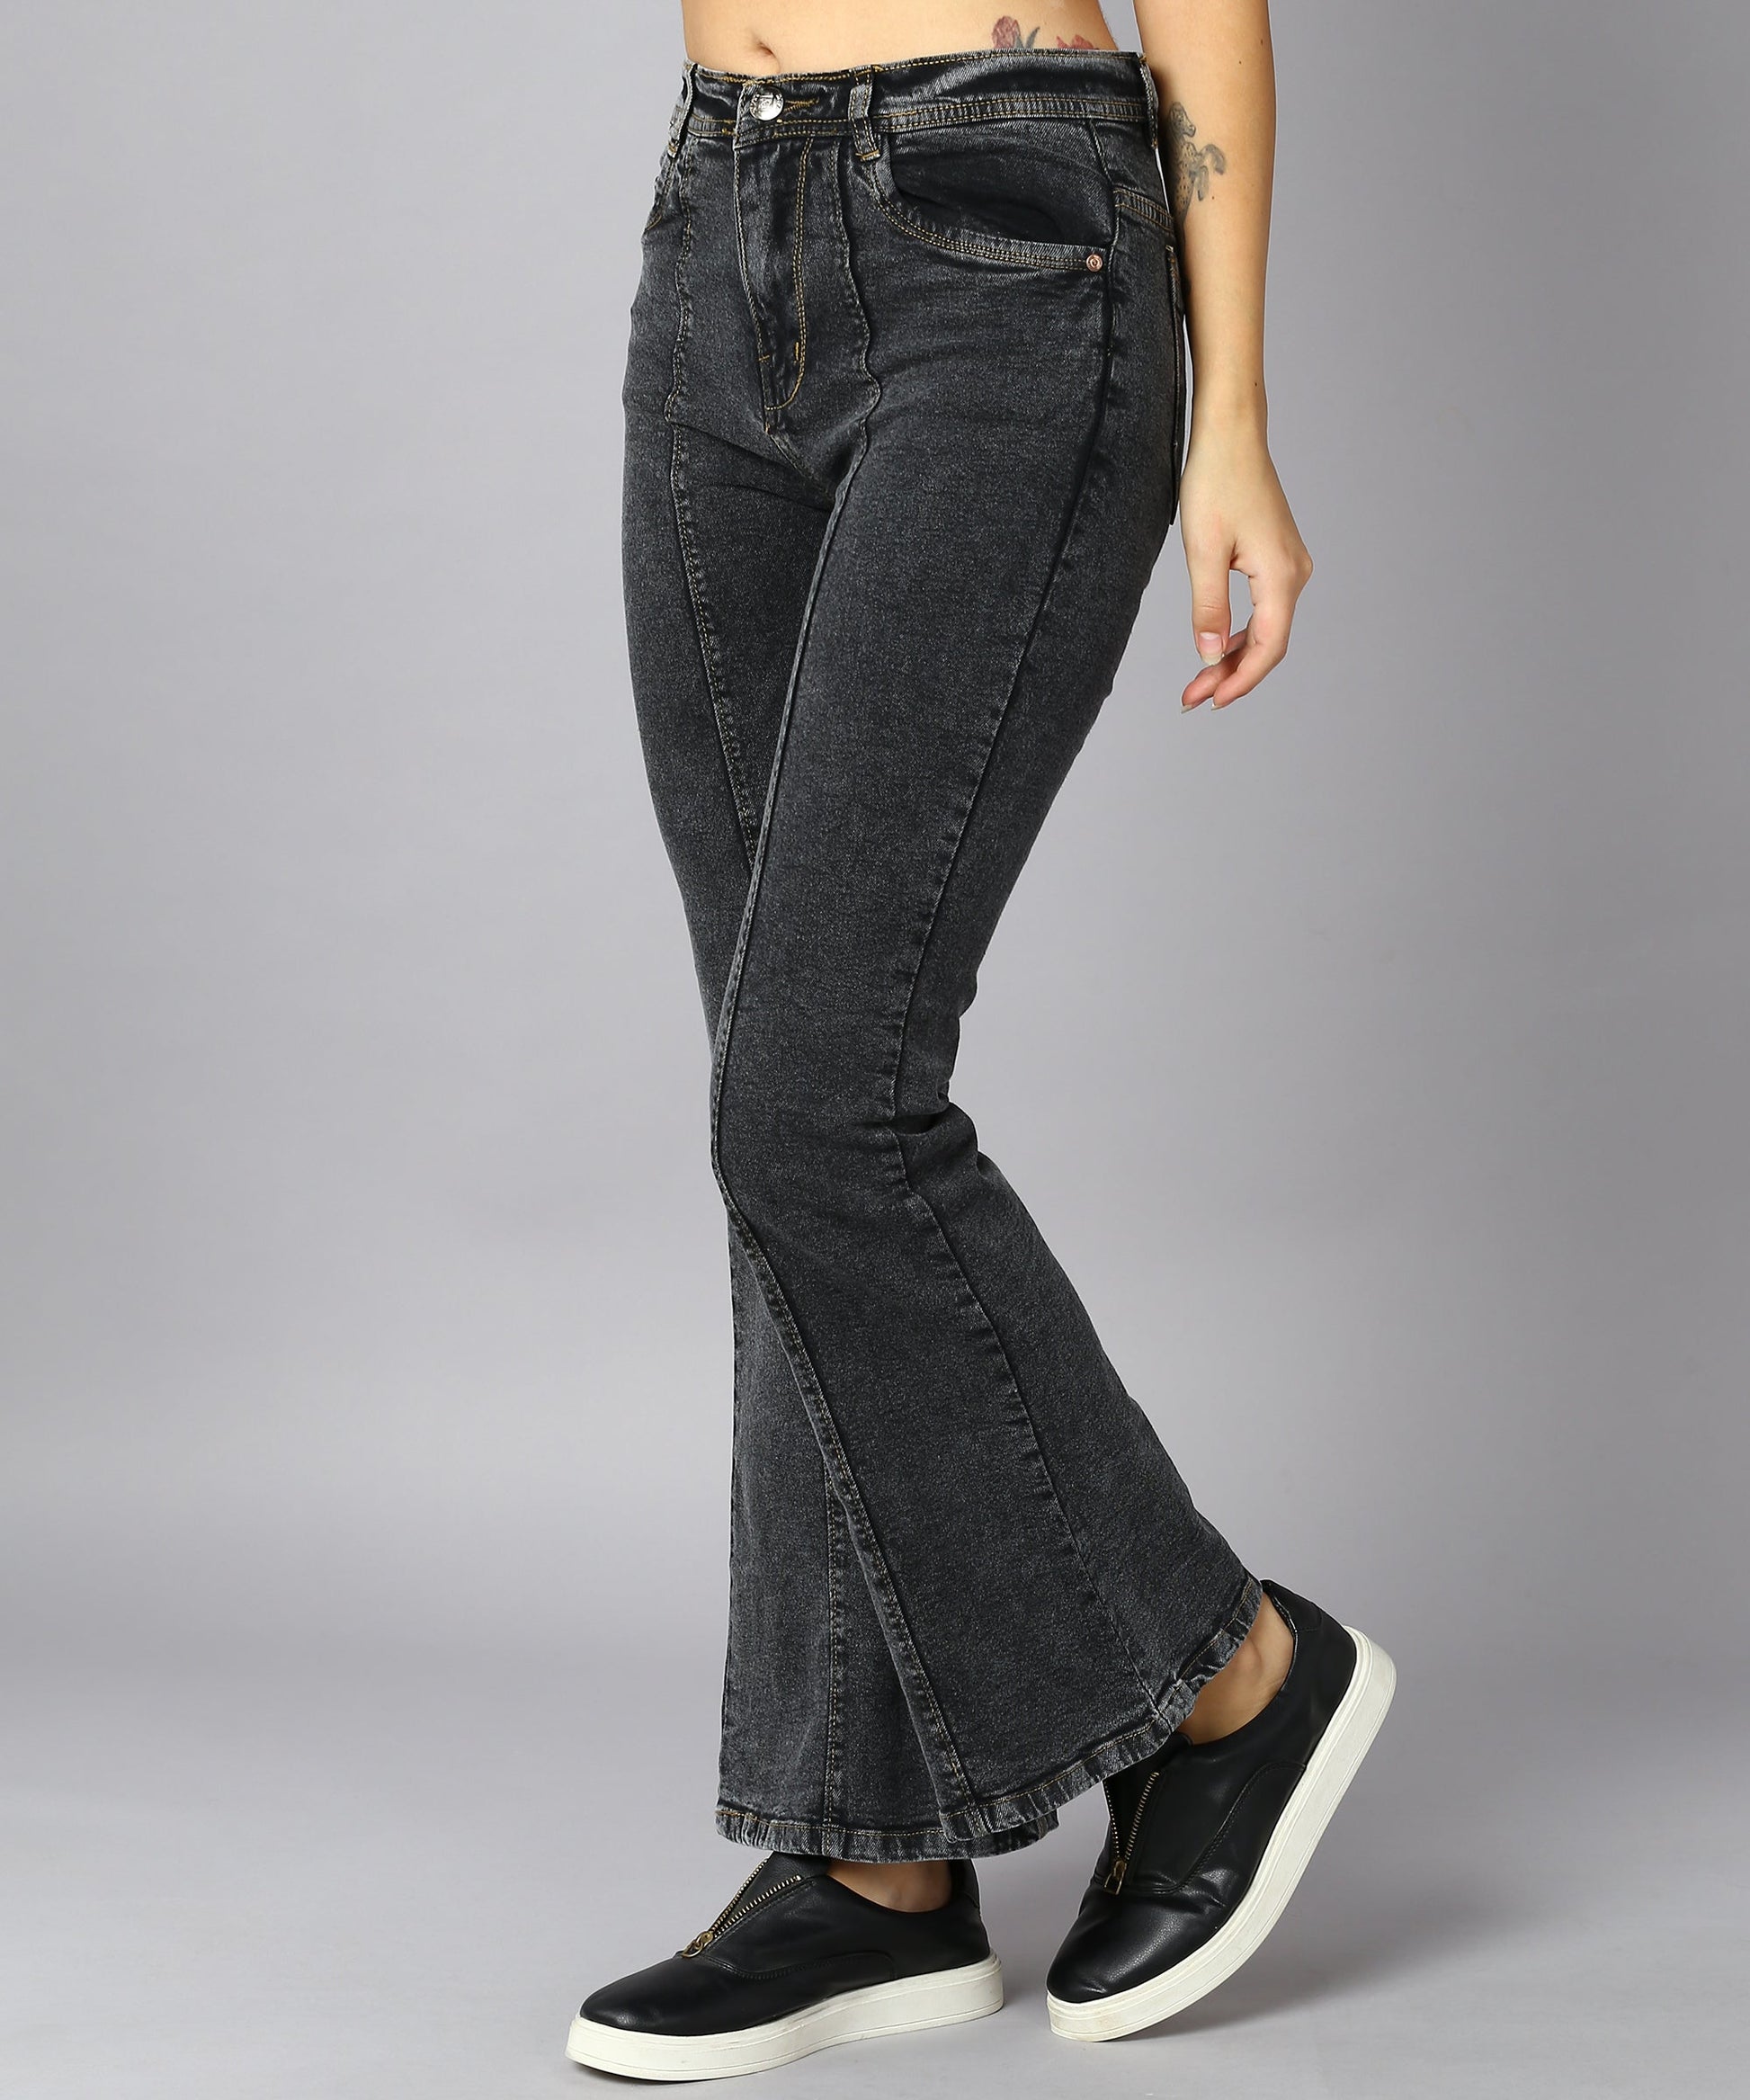 High Waist Bell Bottom Black Jeans – NiftyJeans